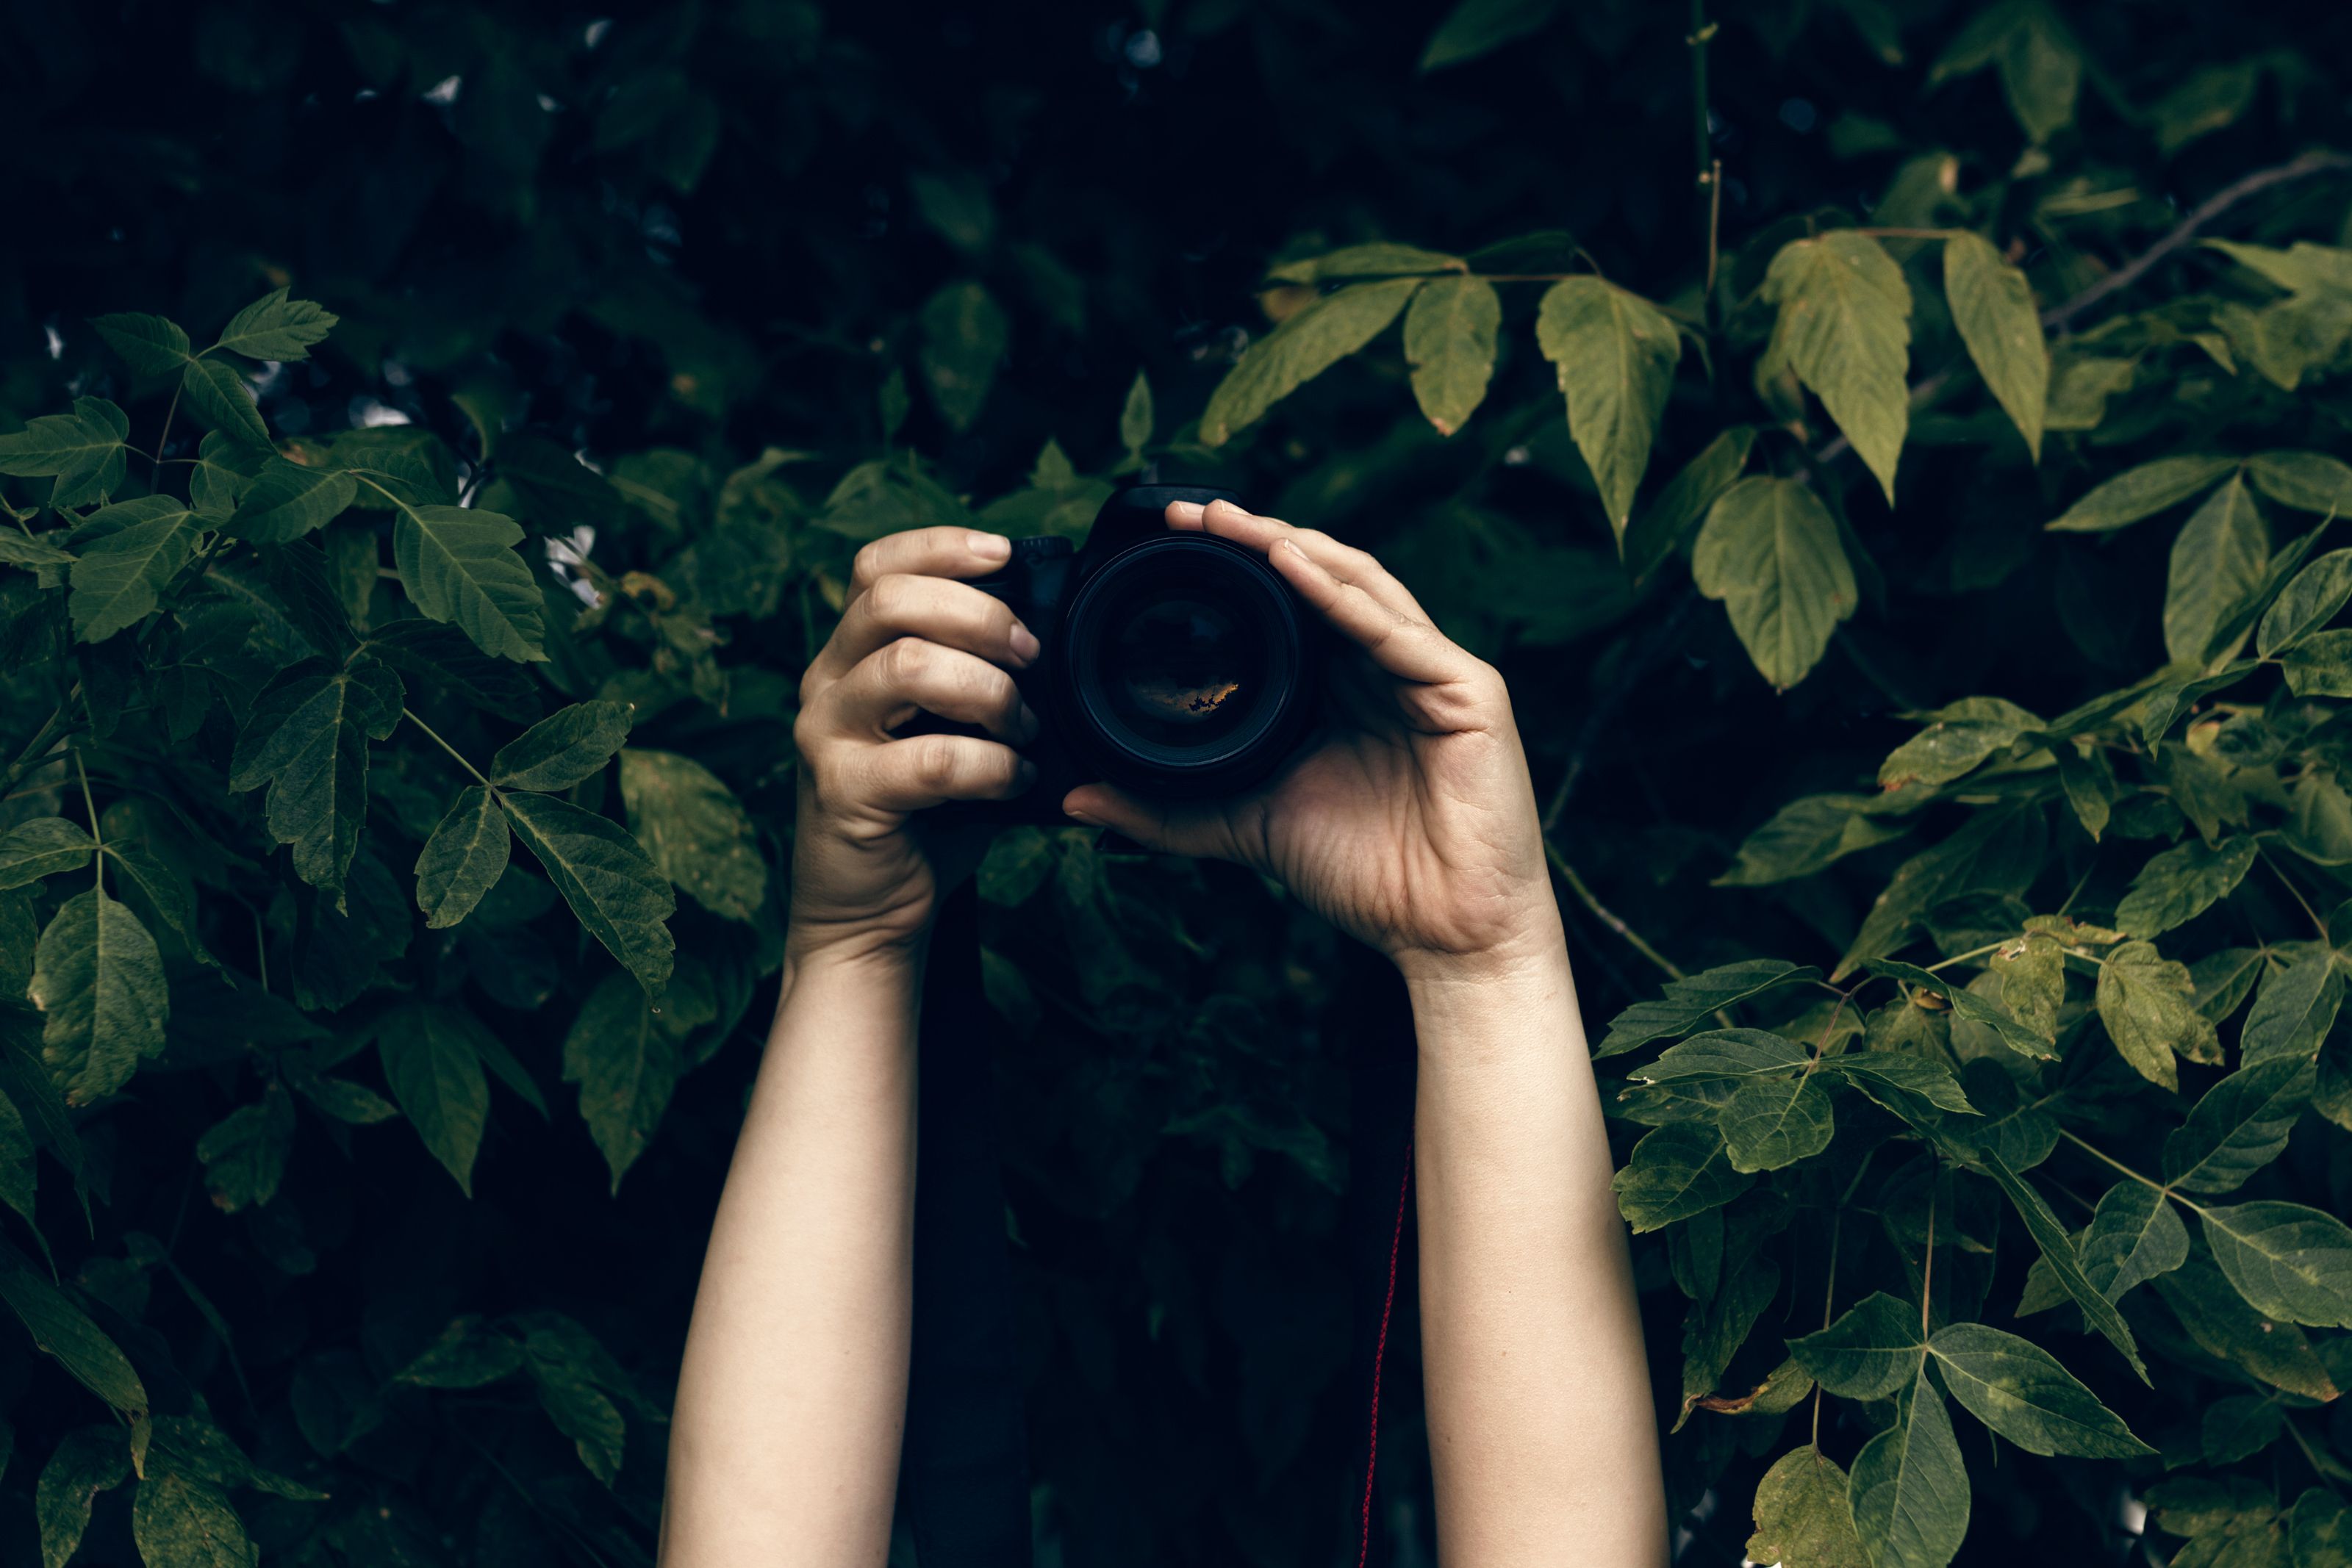 Zwei Hände halten eine Fotokamera vor Bäumen hoch. | Quelle: Shutterstock.